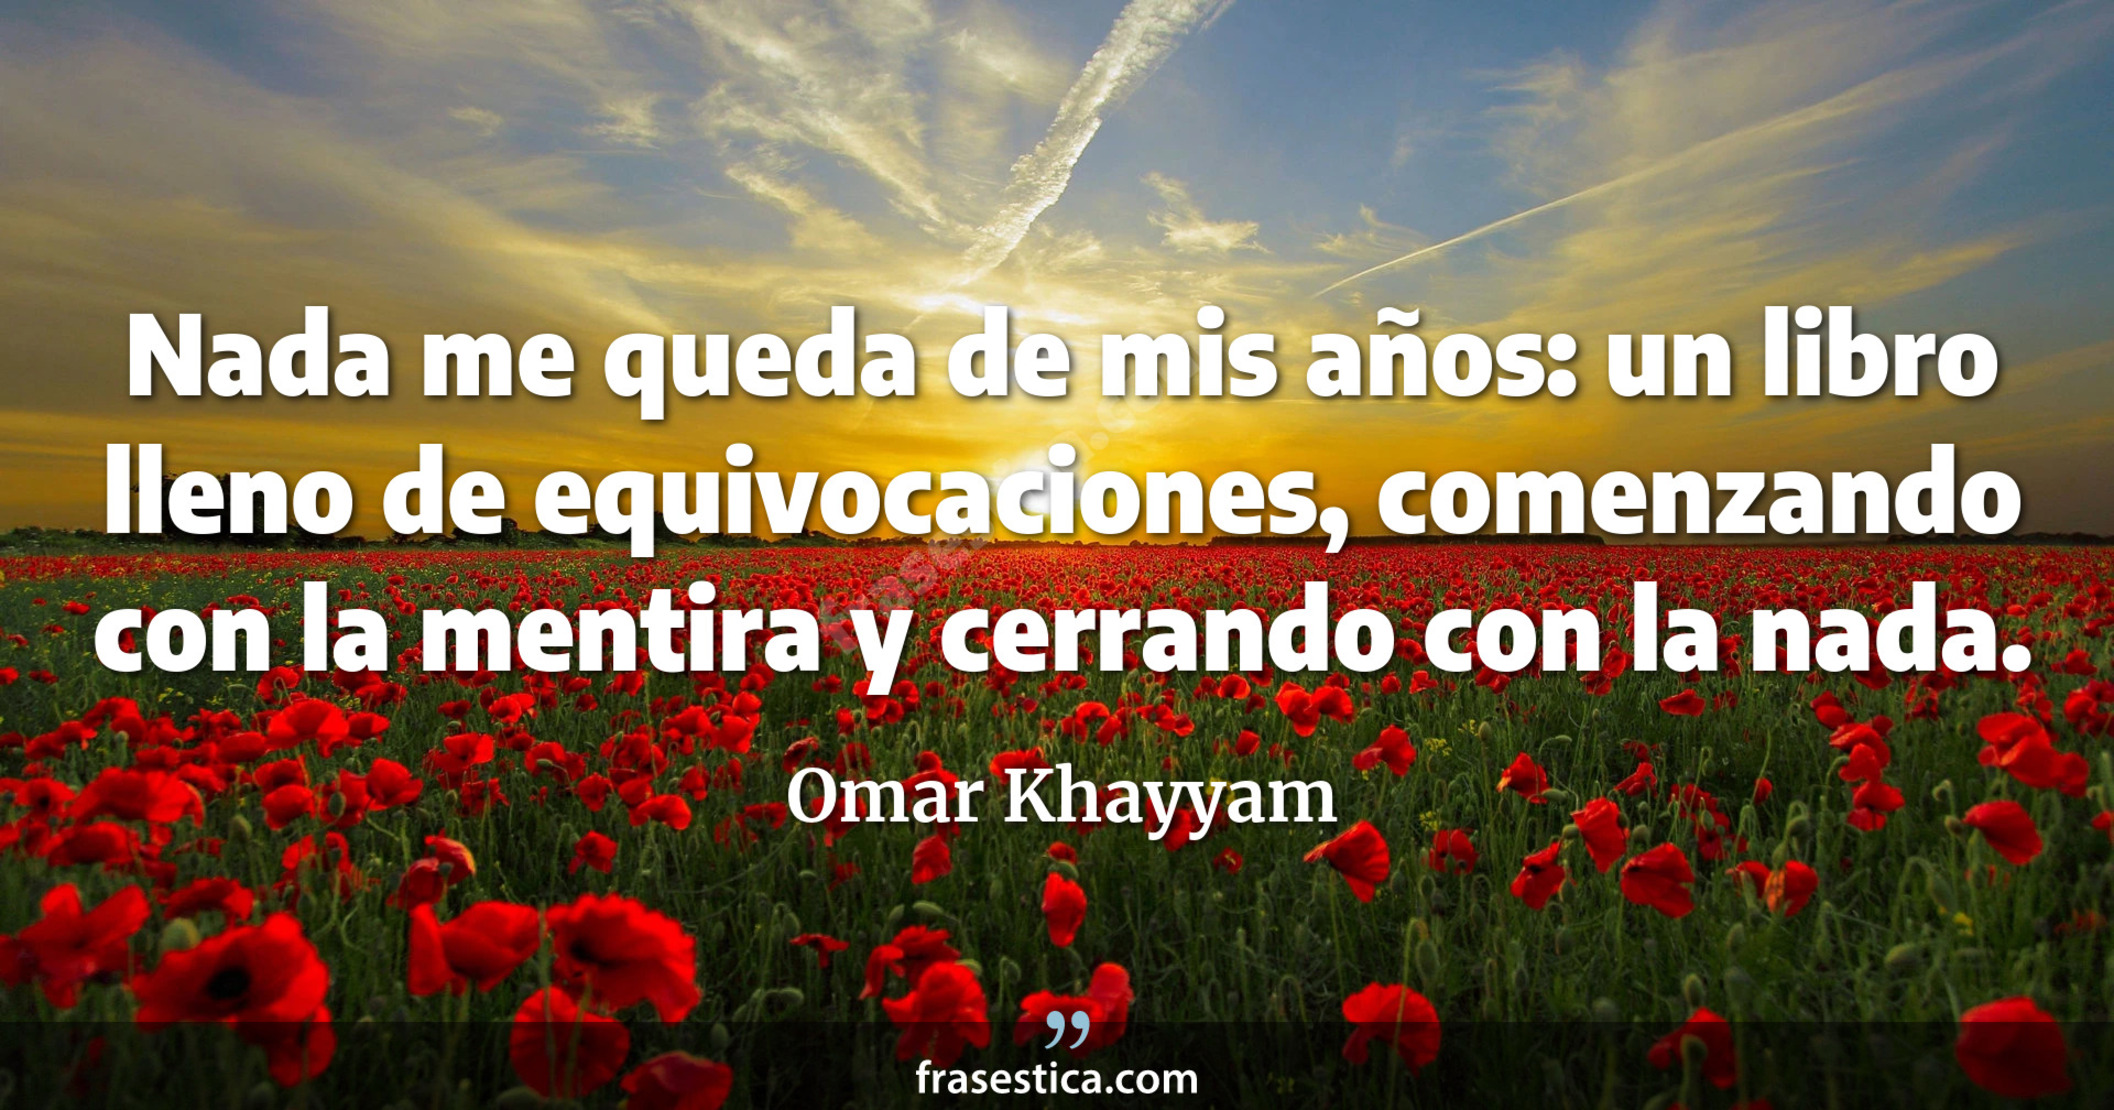 Nada me queda de mis años: un libro lleno de equivocaciones, comenzando con la mentira y cerrando con la nada. - Omar Khayyam